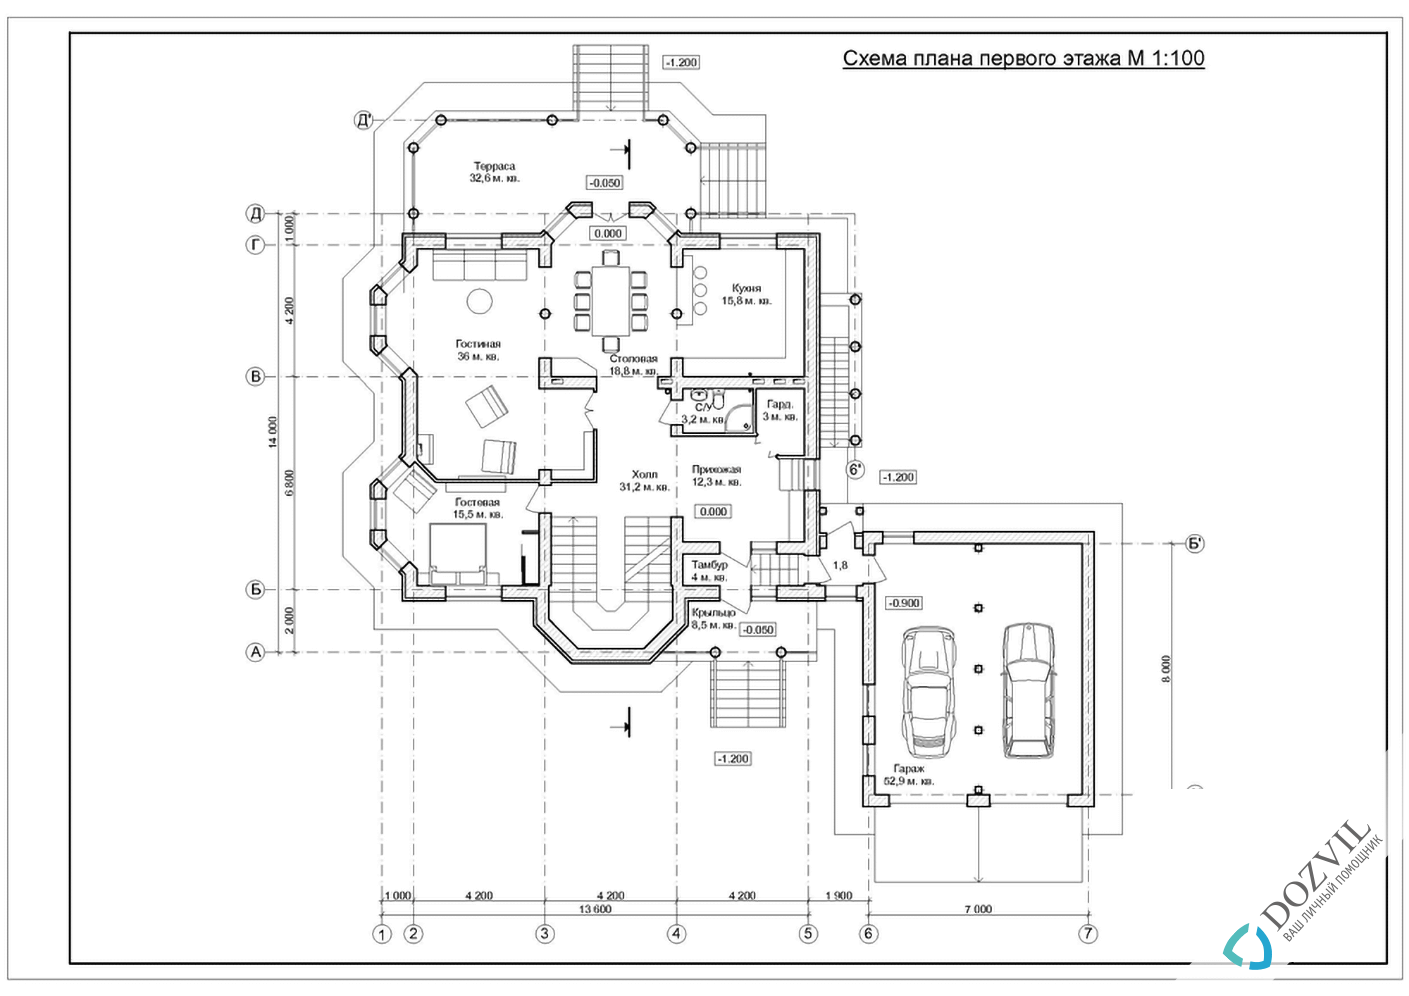 Узаконити реконструкцію> Реконструкція будинку з загальною площею до 500 квадратних метрів > 2 етап - Розробка ескізу намірів будівництва